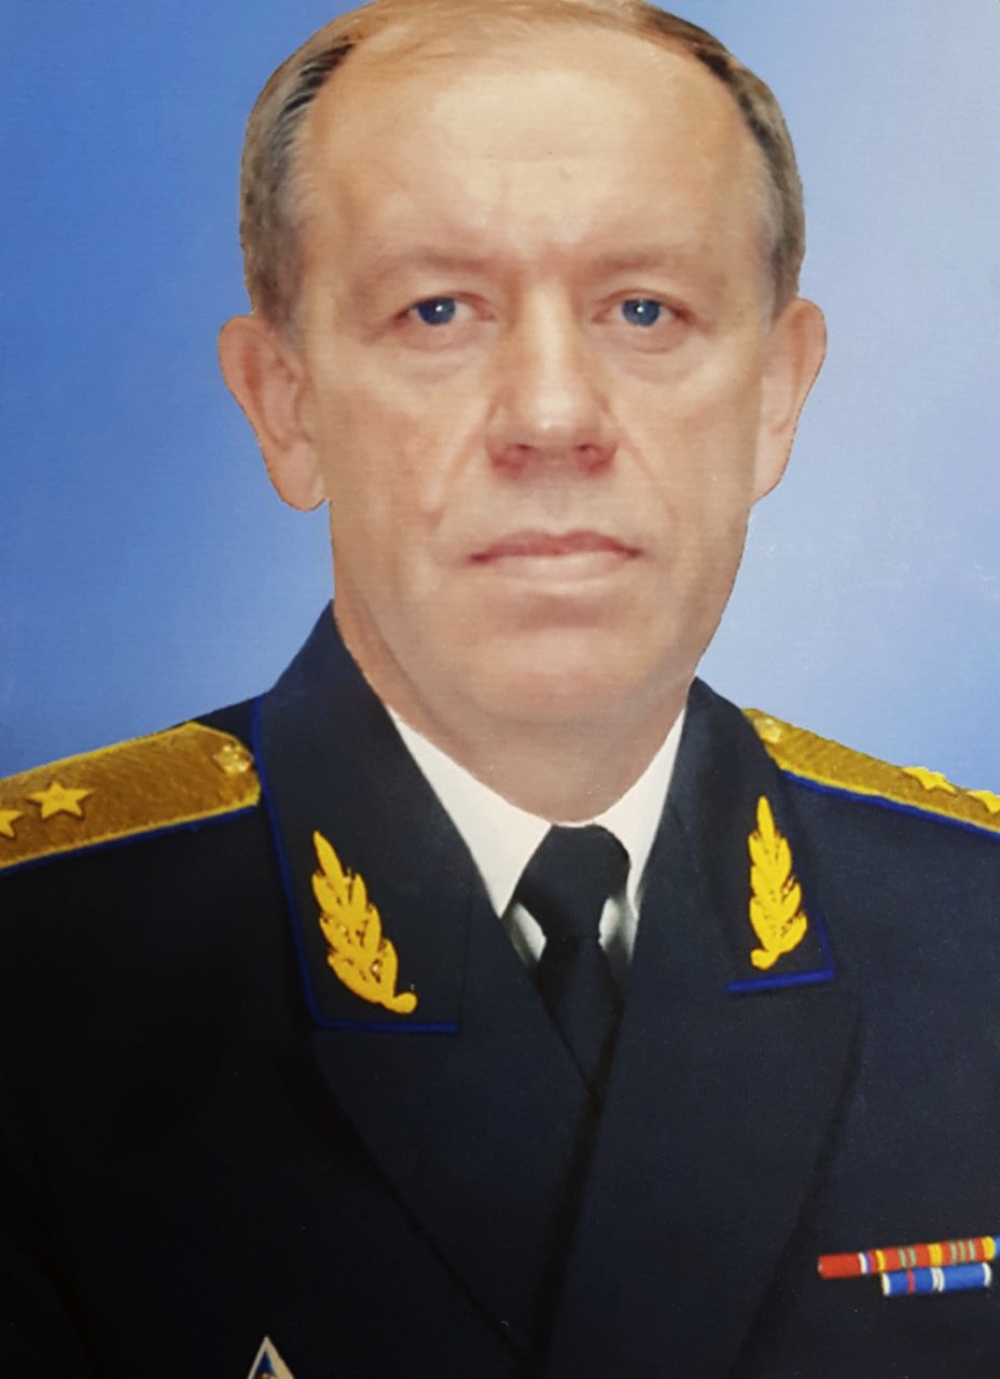 Что известно о смерти в колонии генерала ФСО Геннадия Лопырева?0